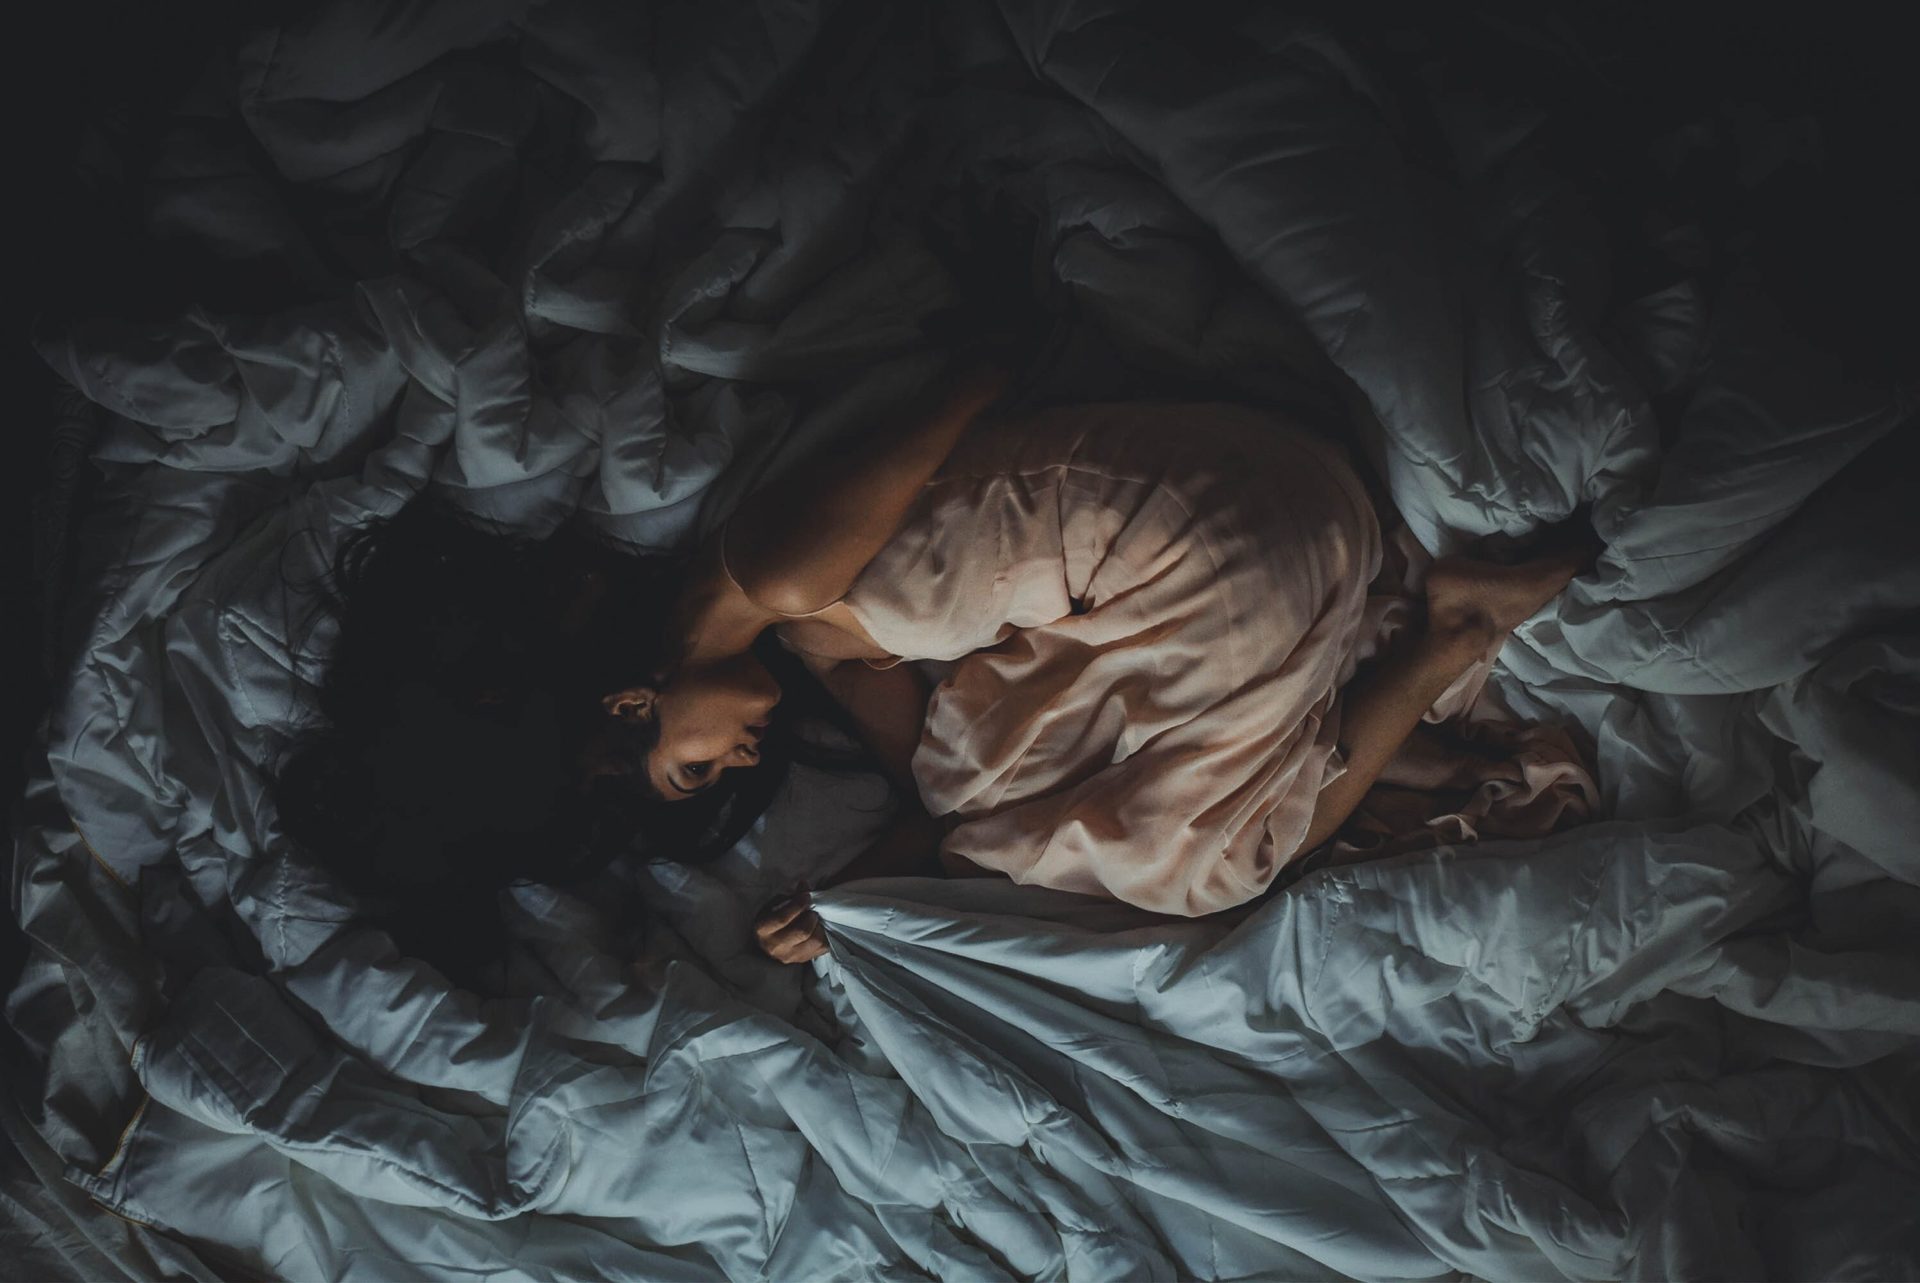 Spavanje u ovom položaju je loše za vaše zdravlje